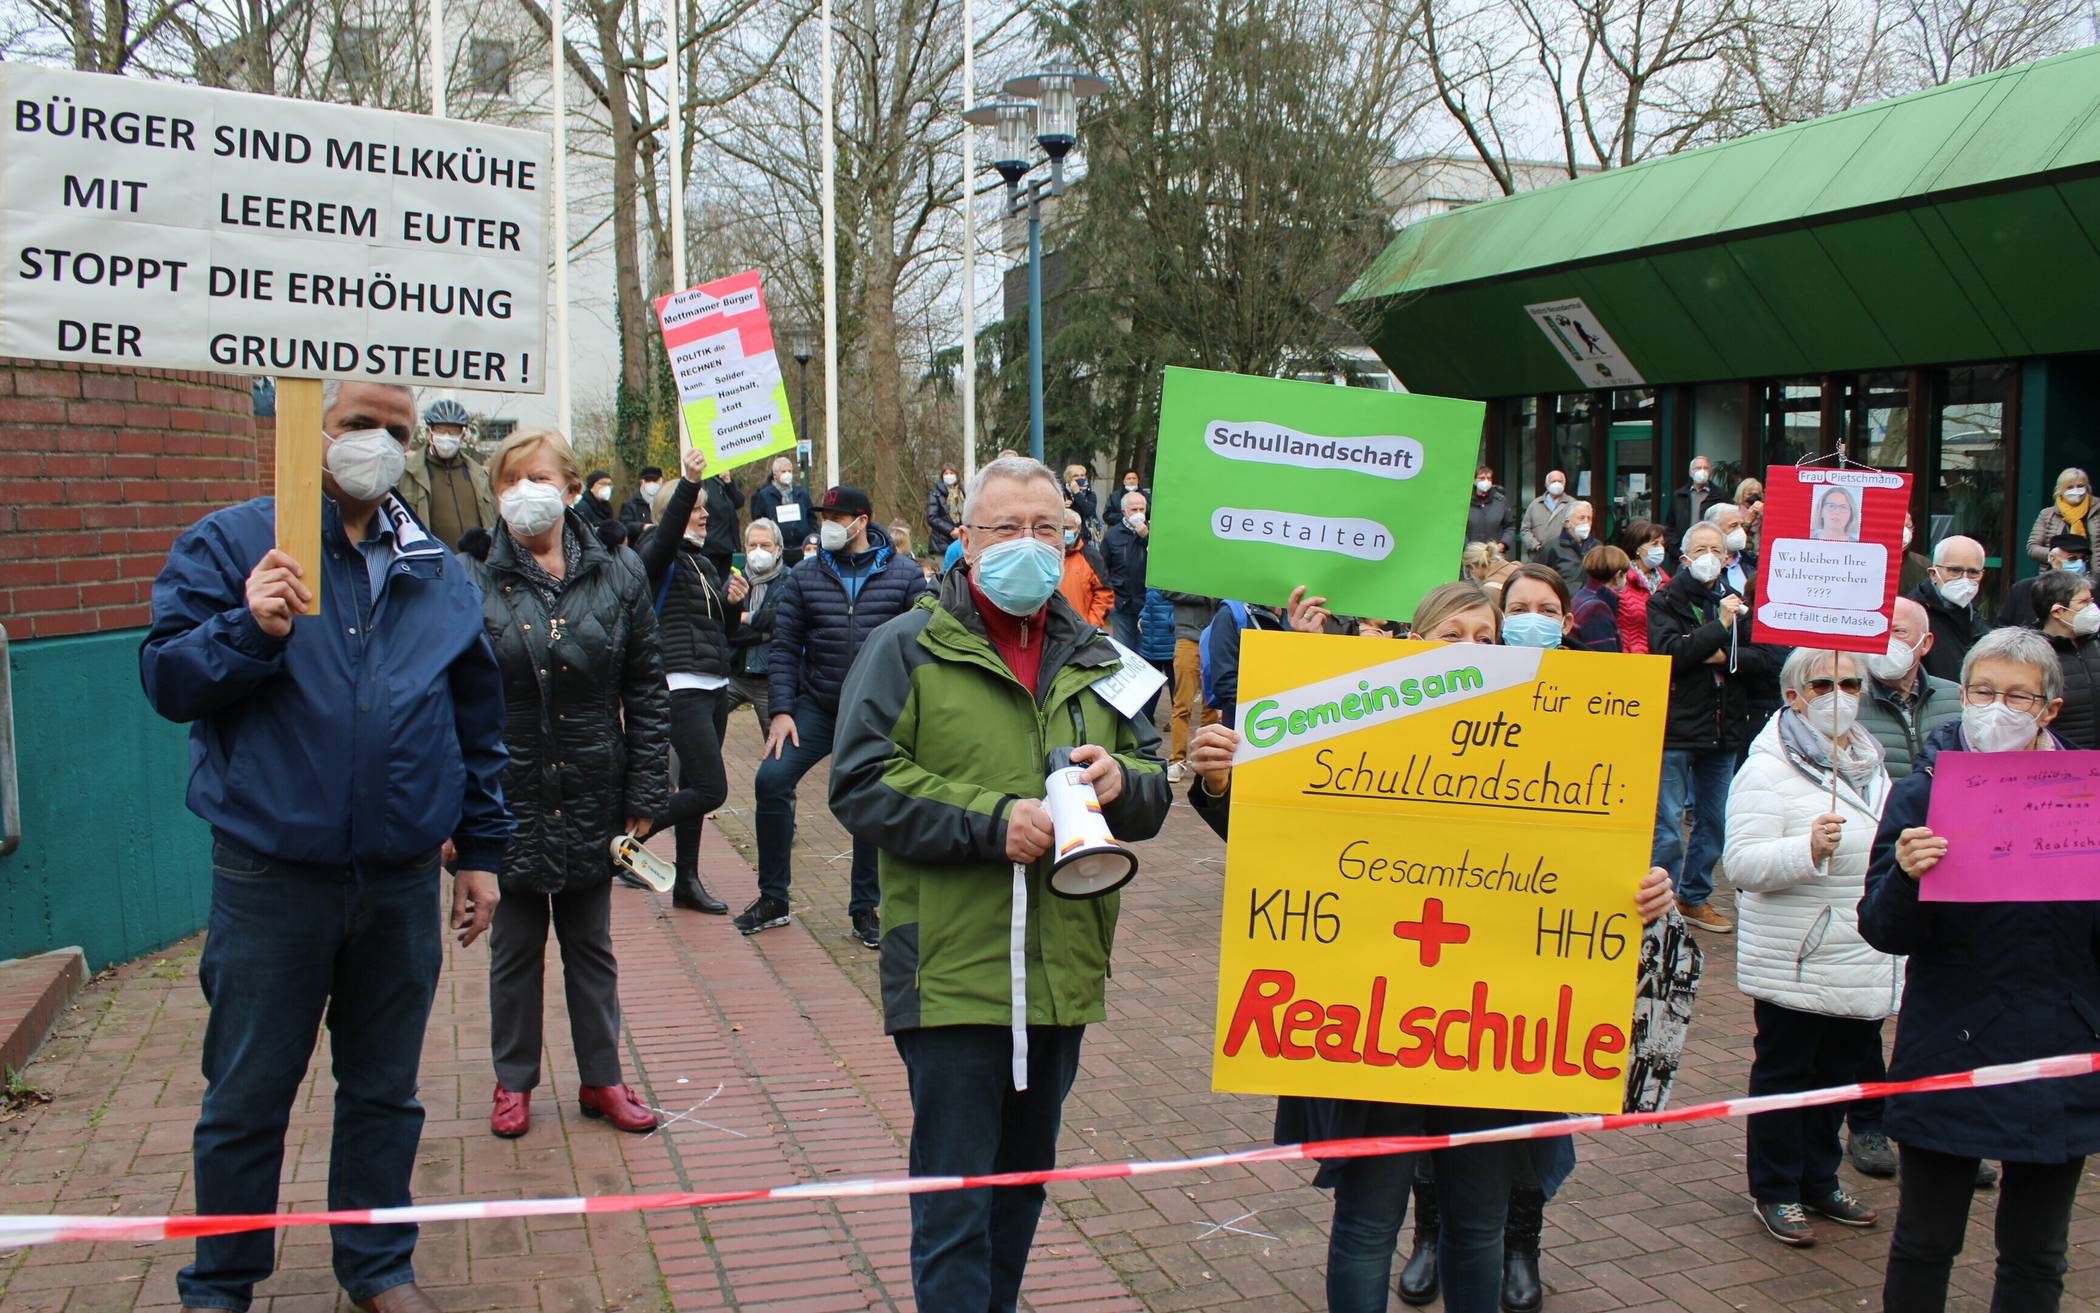  Jürgen Trebing (mit Lautsprecher), Organisator der Protestaktion, war mit dem Ablauf zufrieden. 